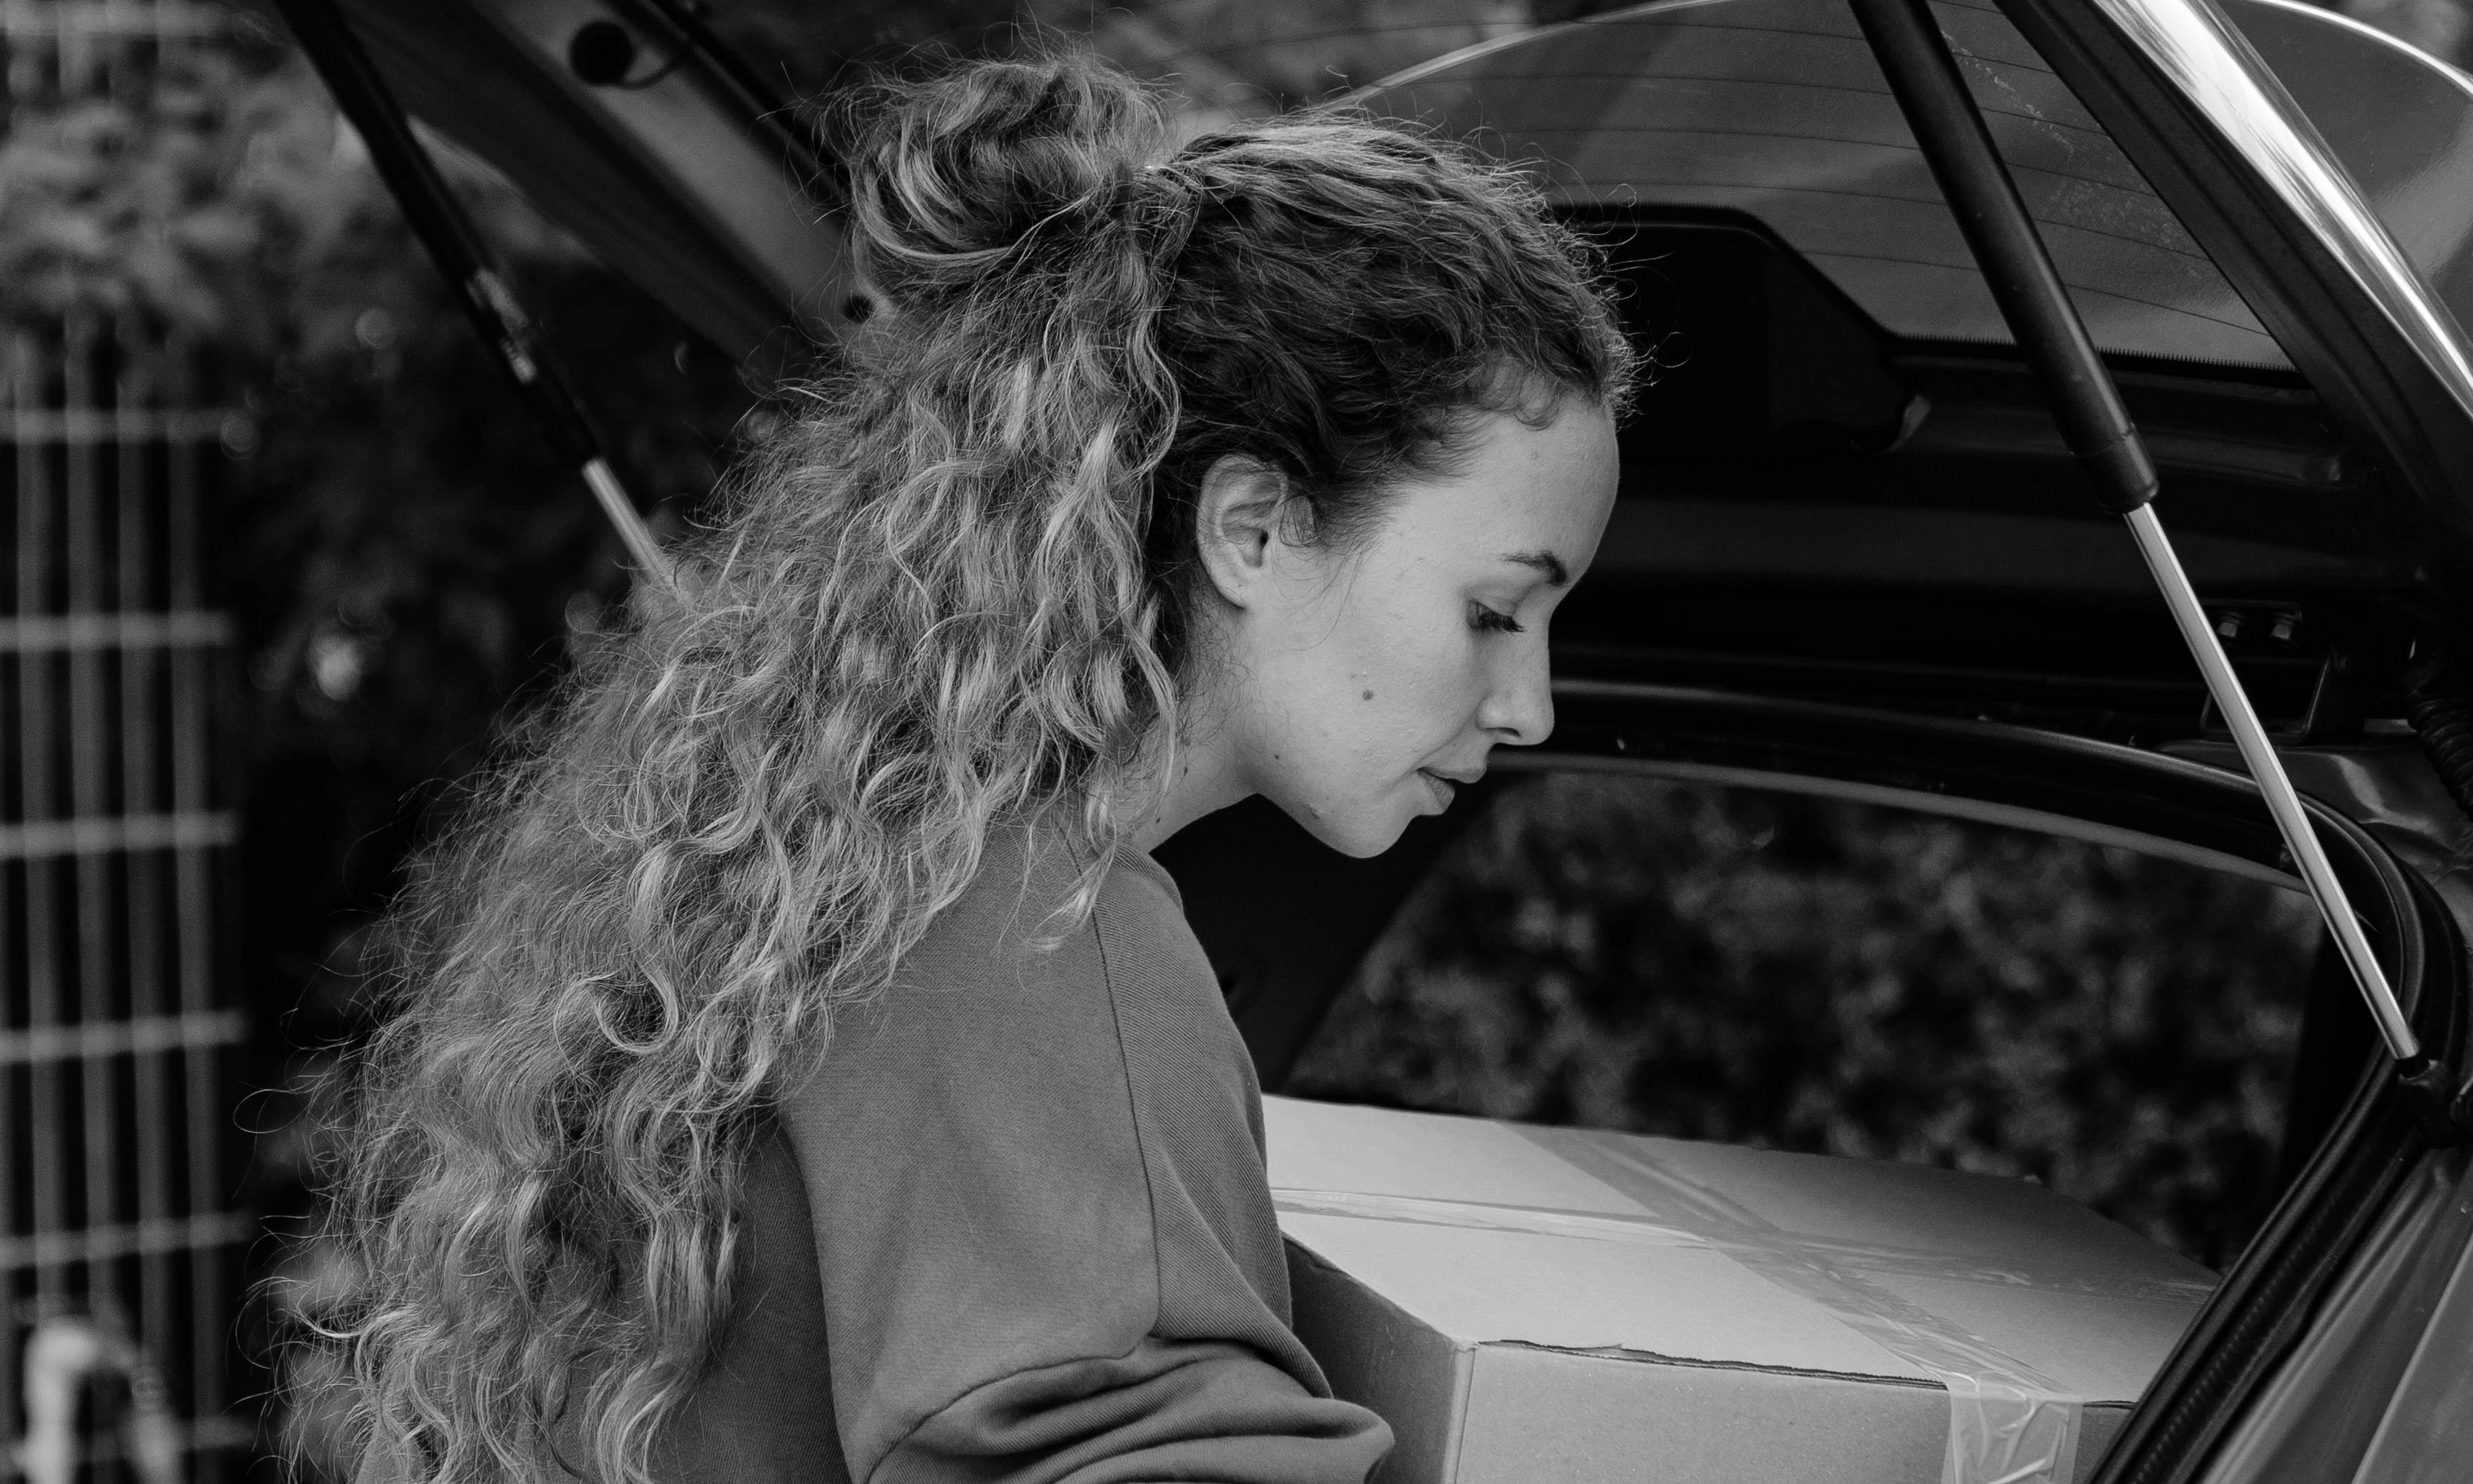 Sarah décharge ses marchandises de la voiture de Mark | Source : Pexels